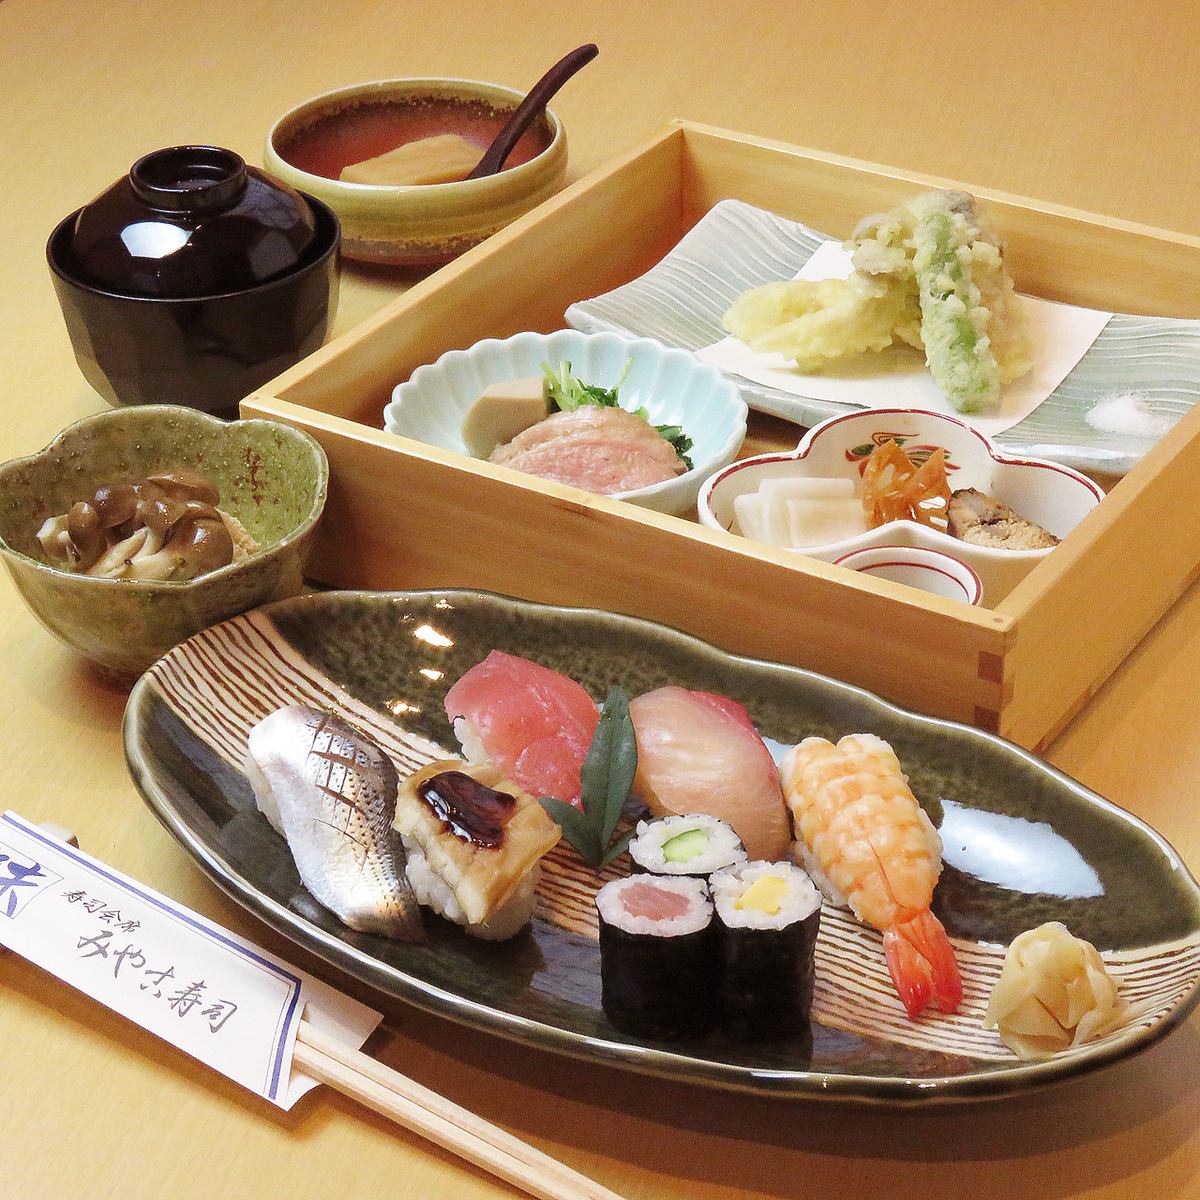 점심도 영업! 산지 직송의 재료로 잡는 극상의 초밥은 "미야코 스시 '에 맡겨!